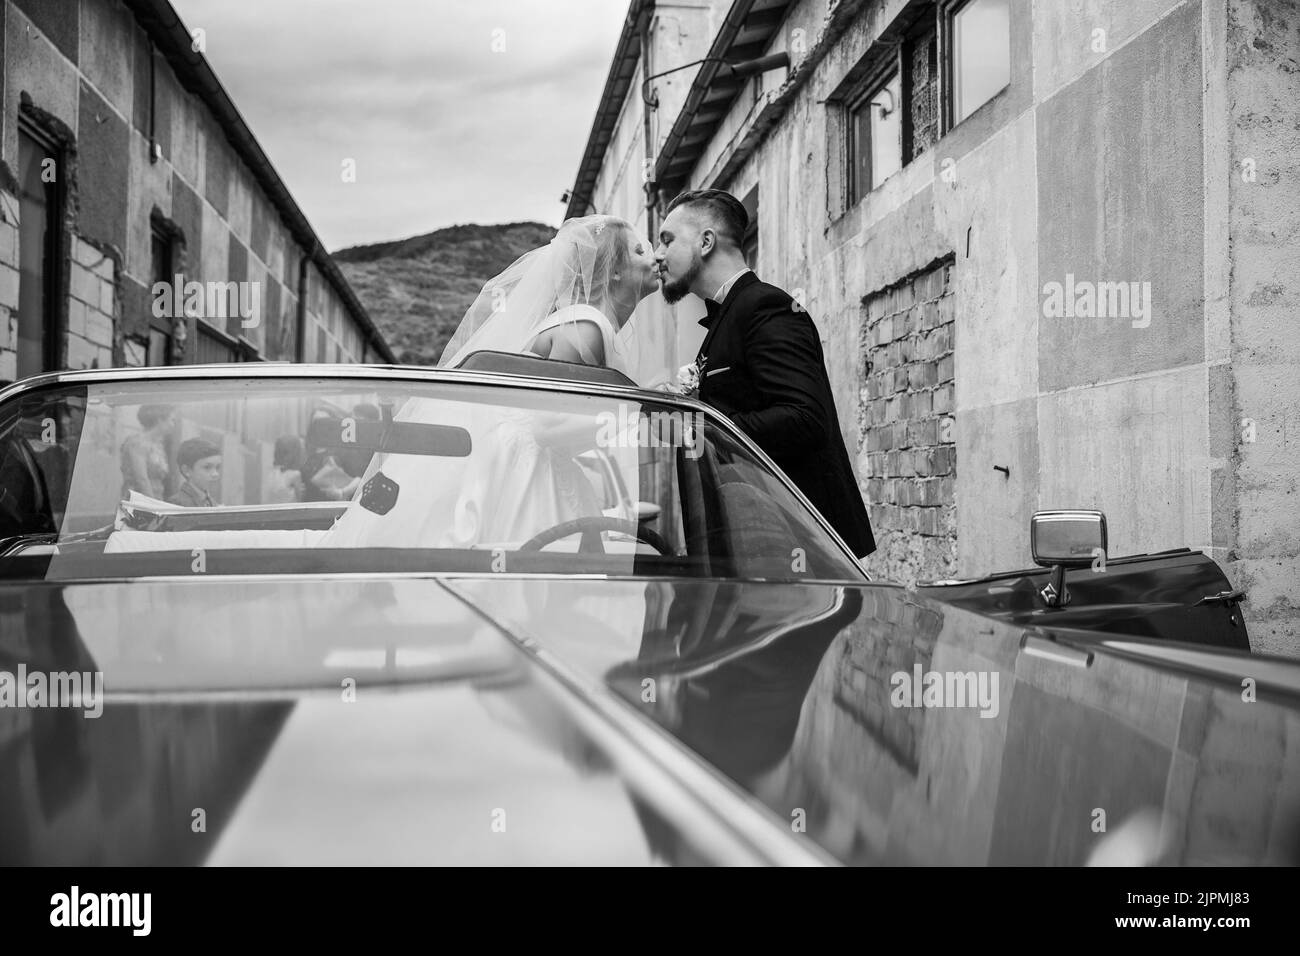 Photo en niveaux de gris d'un couple caucasien embrassant dans une voiture d'époque pendant le mariage Banque D'Images